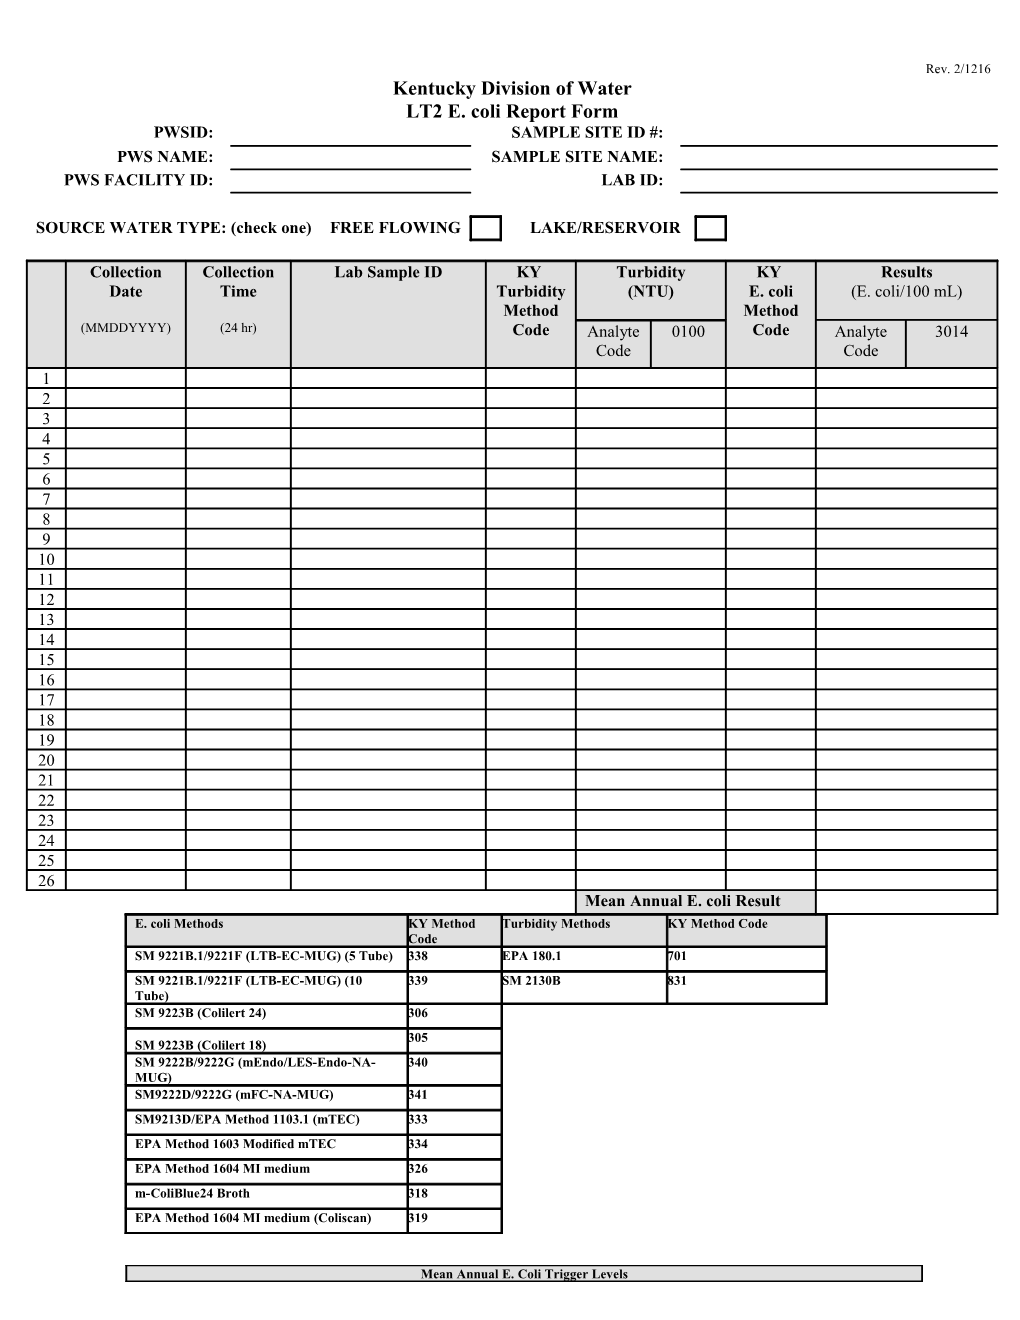 LT2 E. Coli Report Form